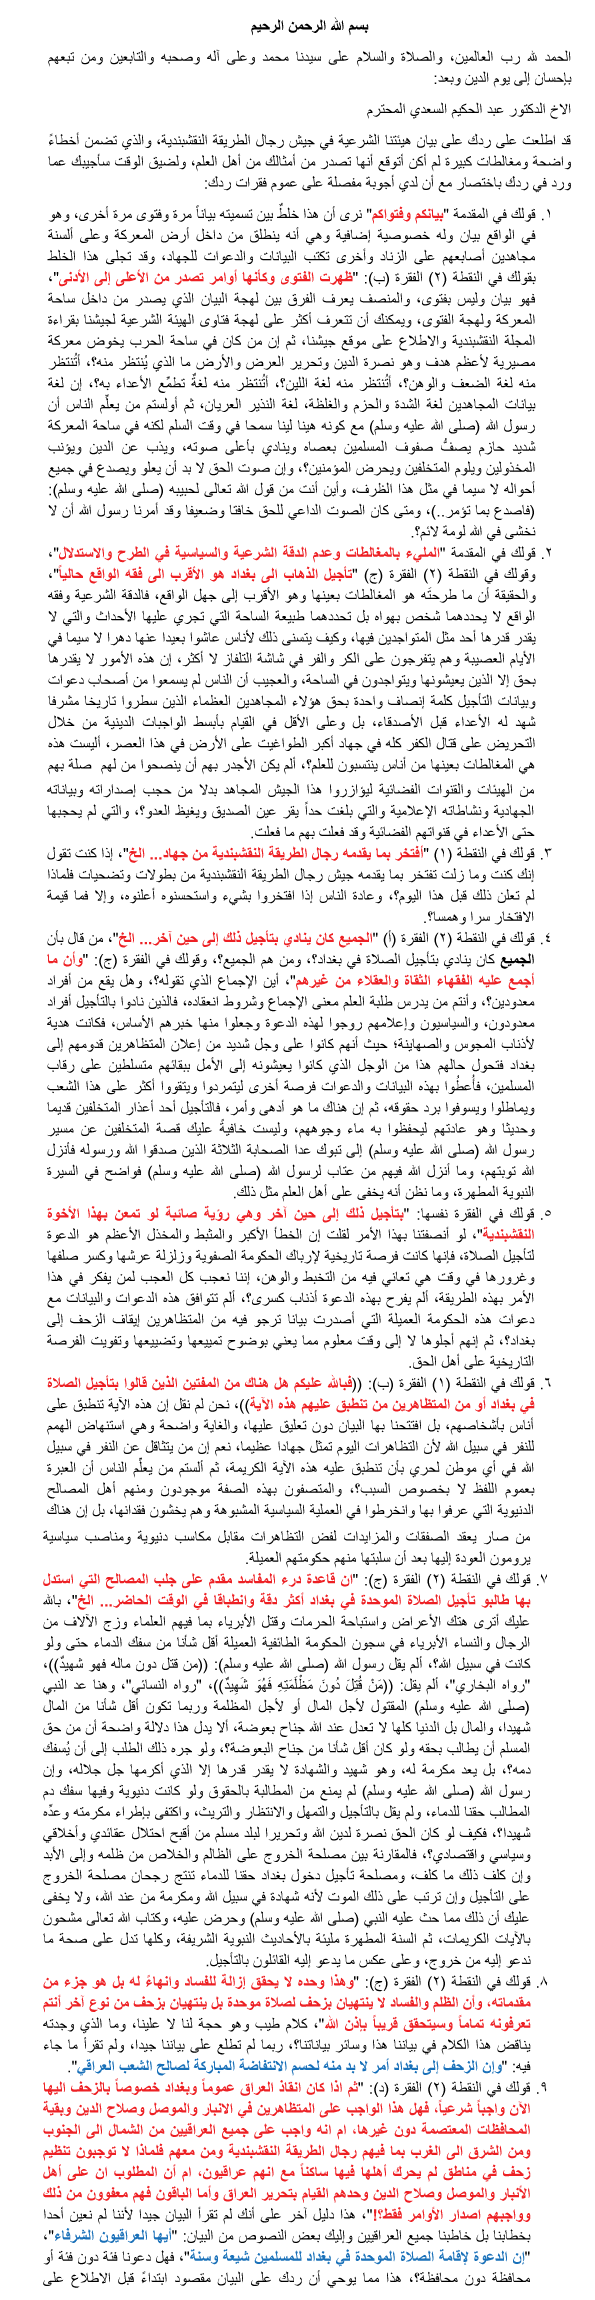 رد الدكتور نور الدين النقشبندي على رد الدكتور عبد الحكيم السعدي بتاريخ 21-2-2013 001